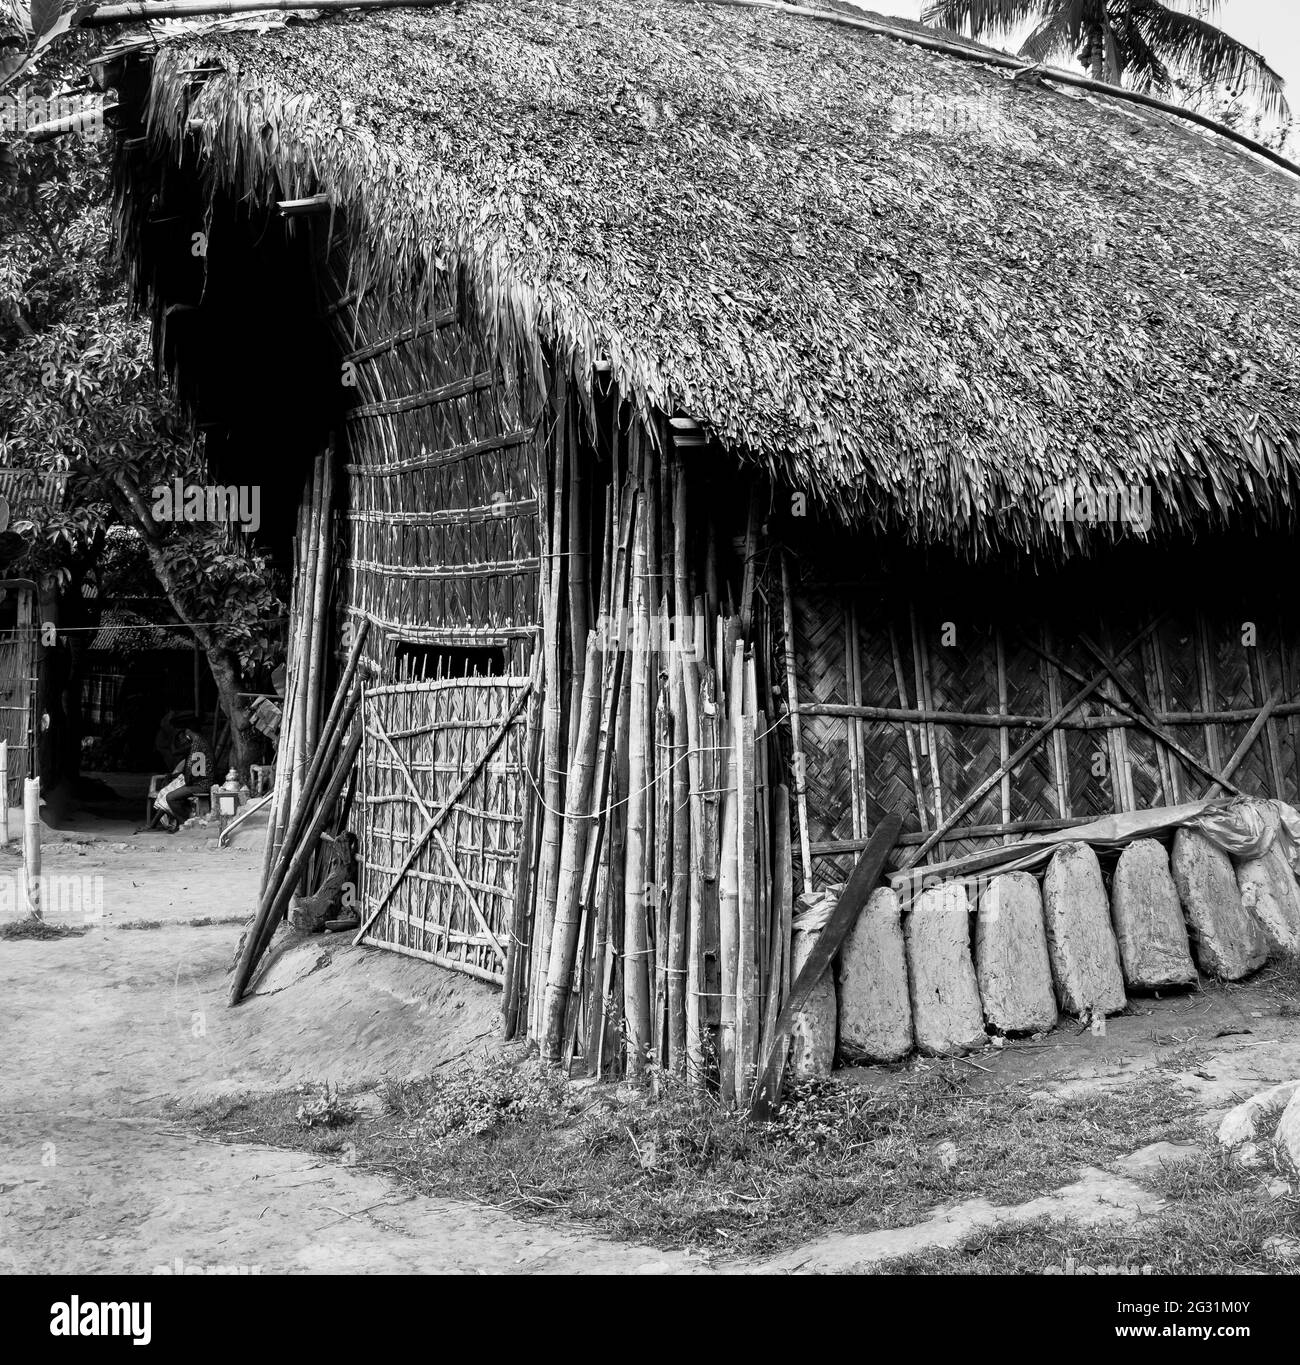 Une maison de paille et poterie. Cette image a été prise le 30 mars 2021 à Shekhoragar, Bangladesh, Asie du Sud Banque D'Images